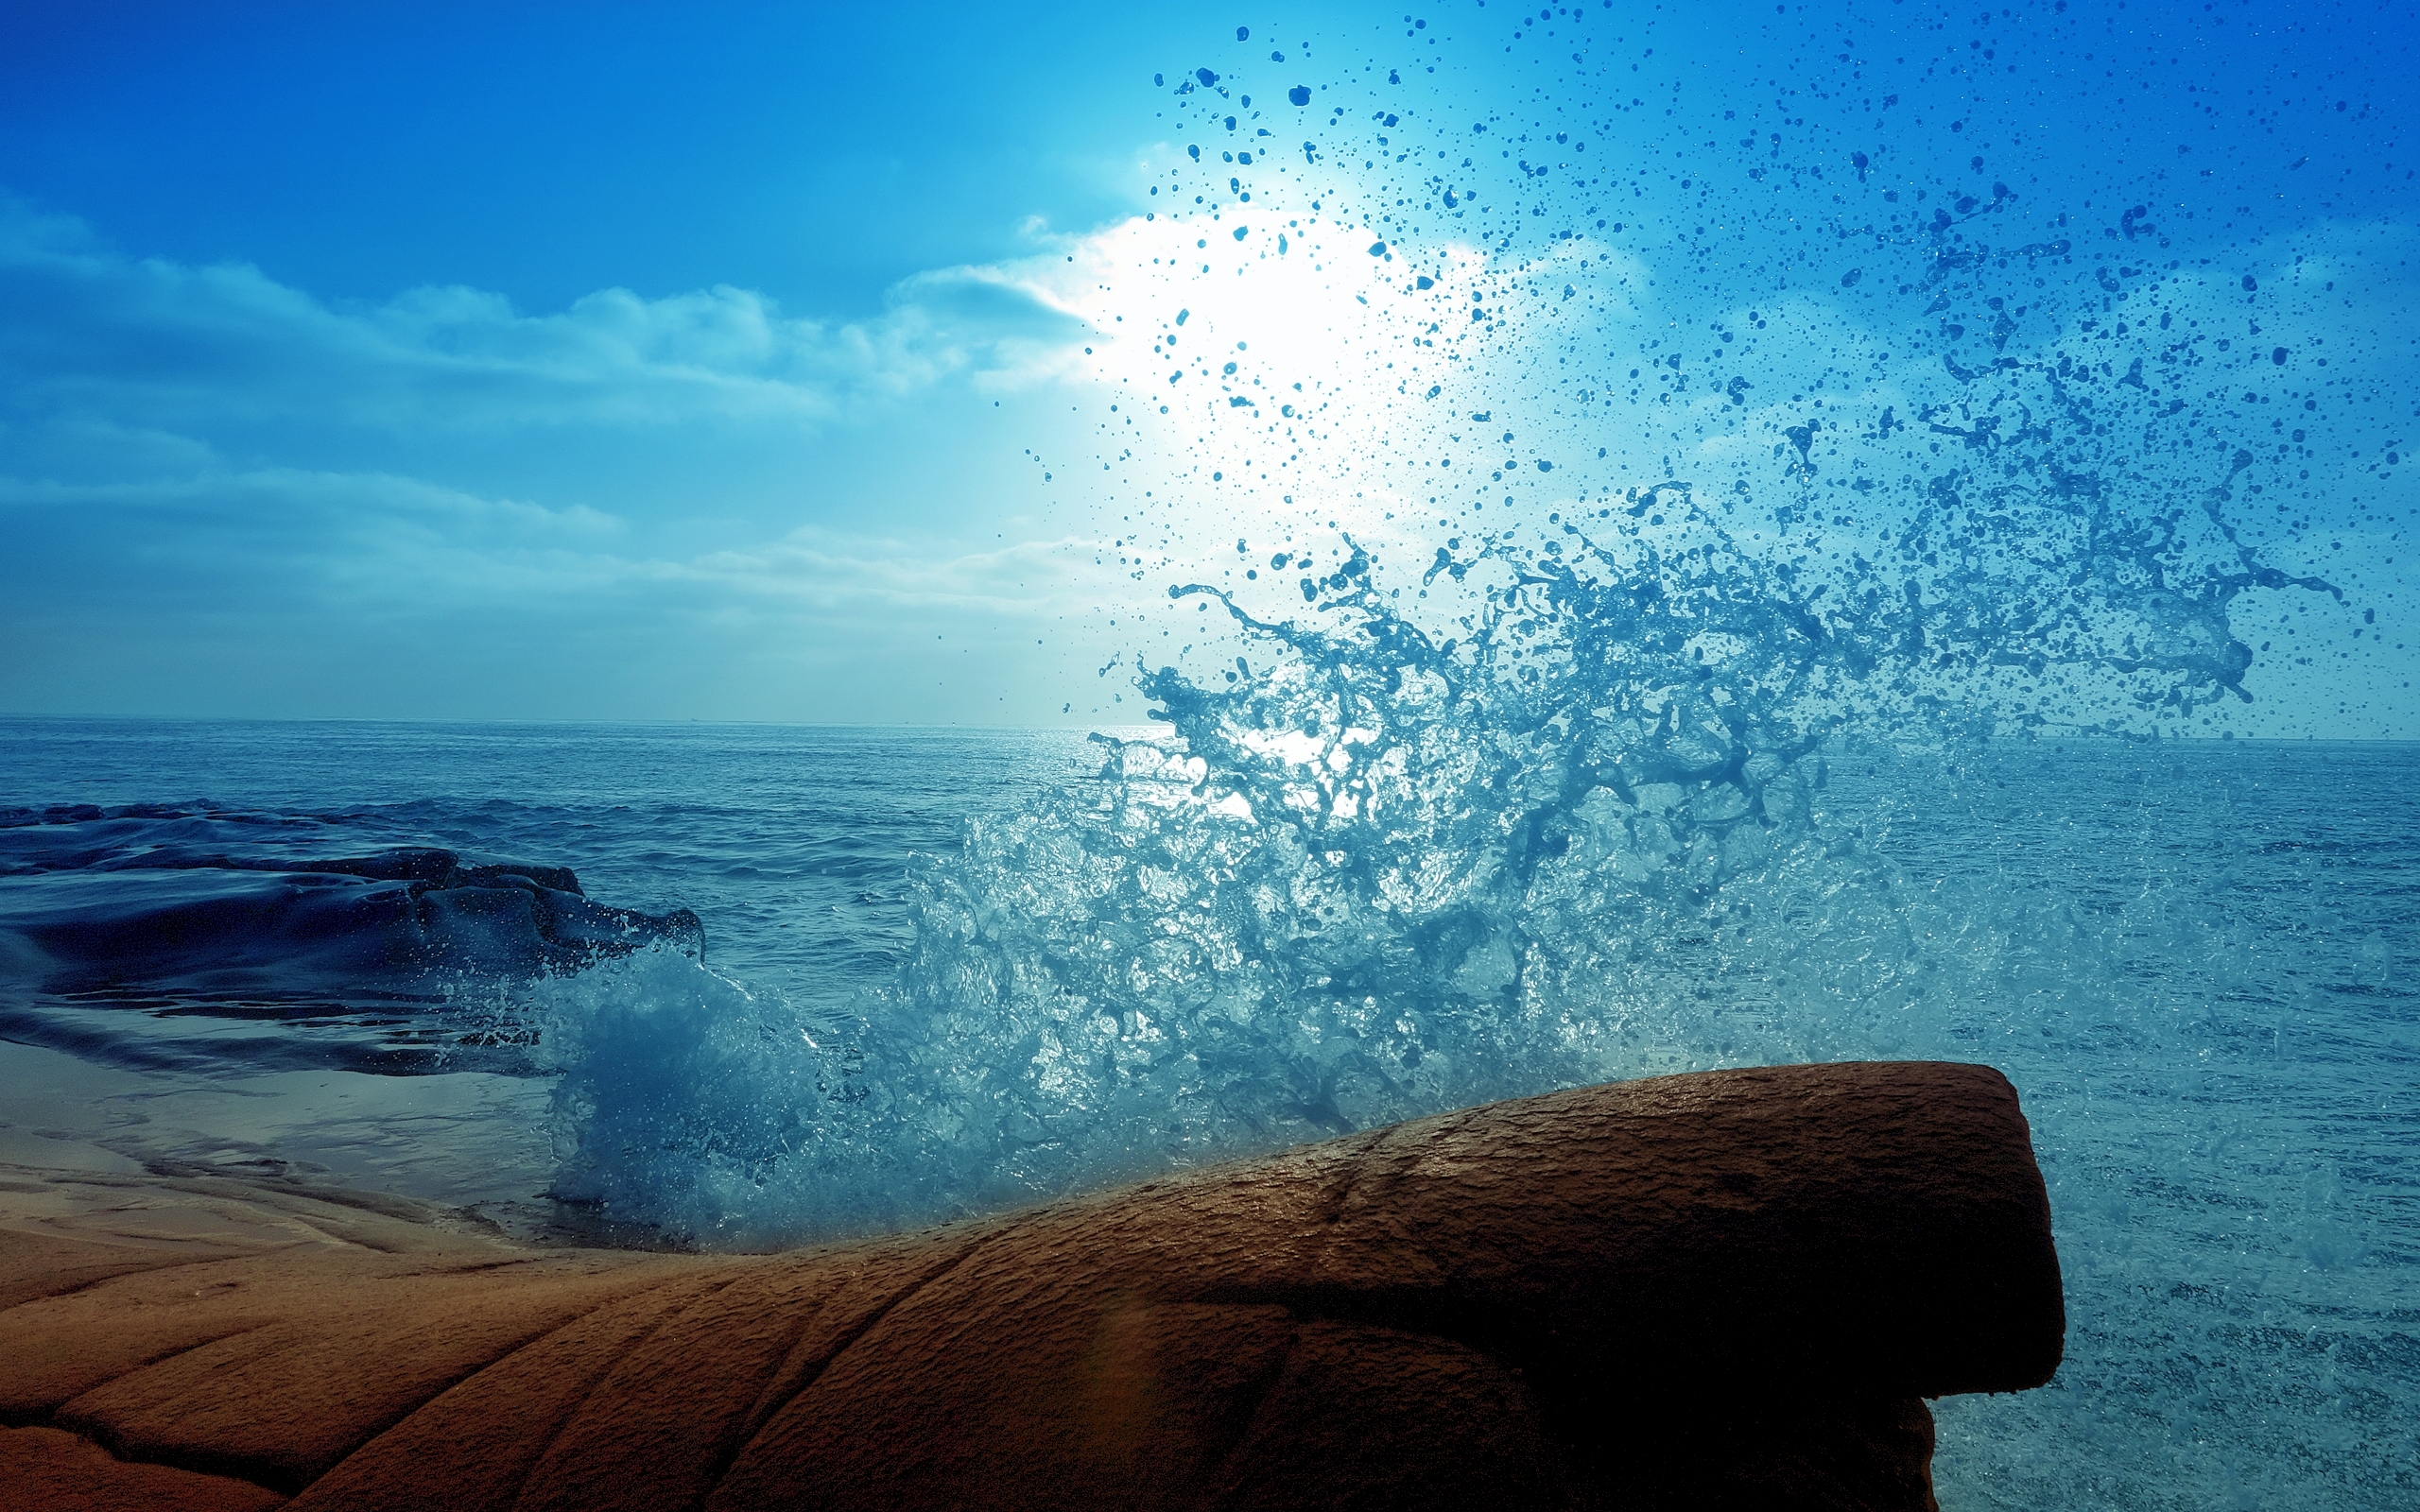 Берег время как вода. Море, волны. Море солнце. Голубое море. Море и небо.